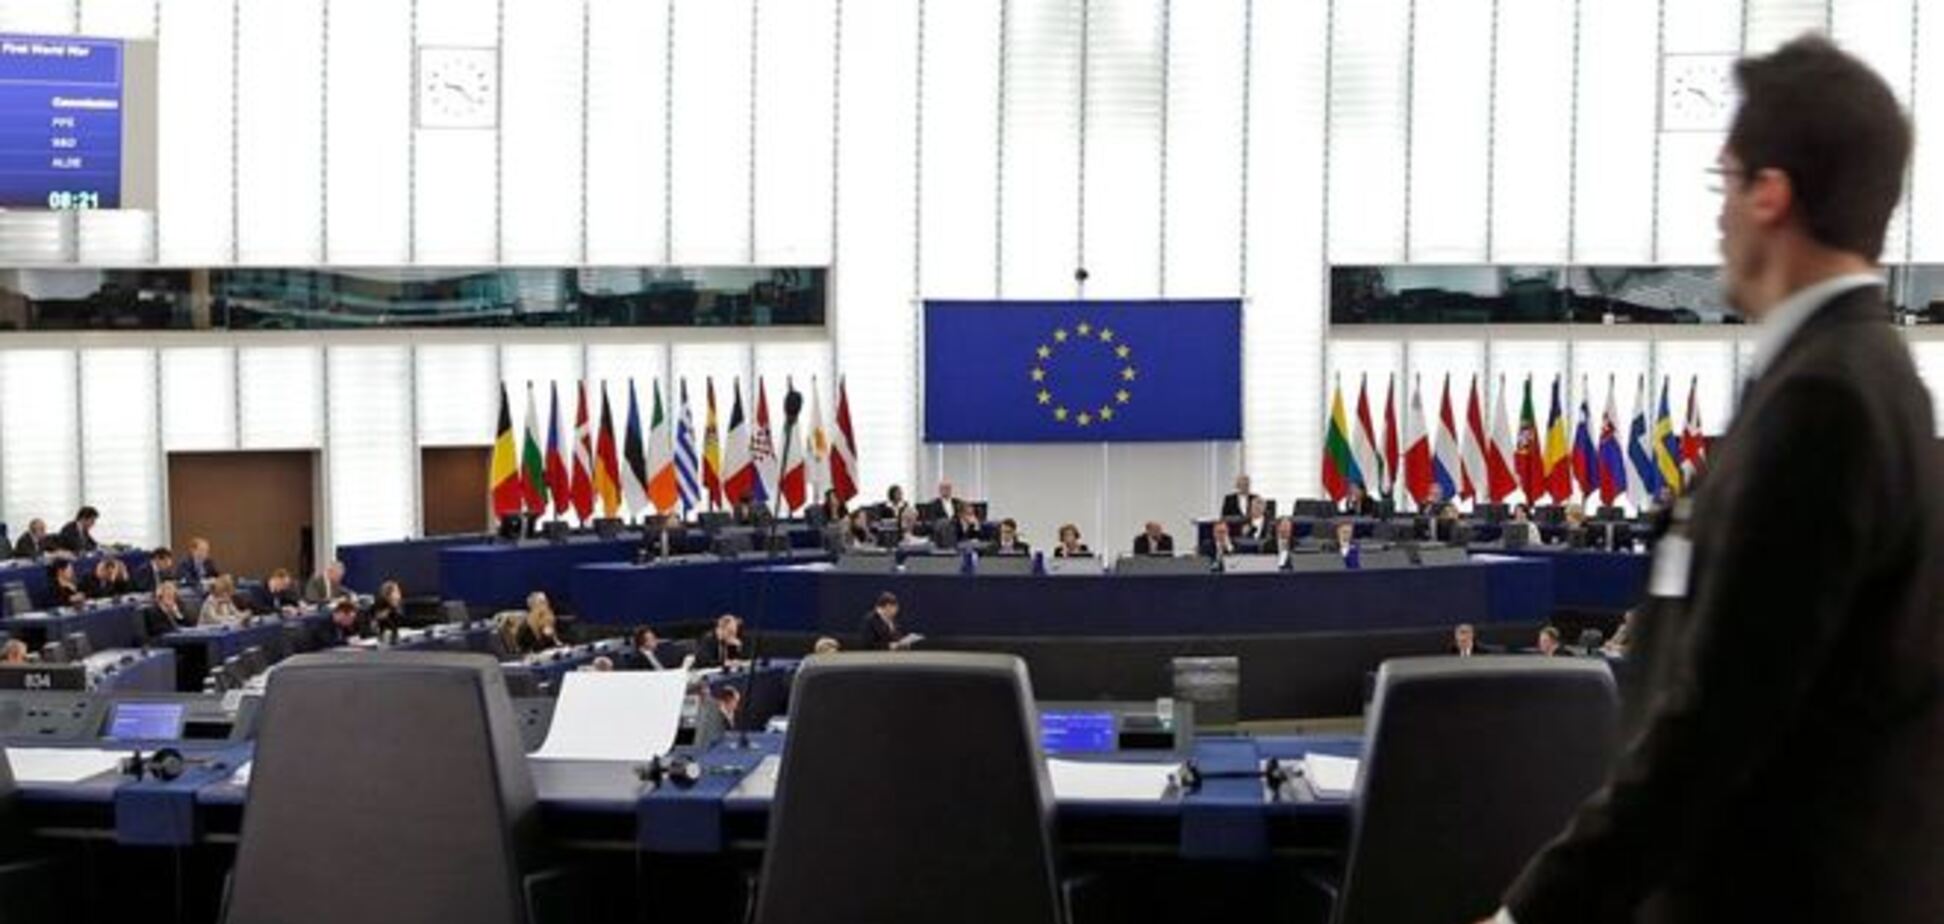 Европарламент и Украина ратифицирует соглашение об Ассоциации синхронно и в ближайшее время